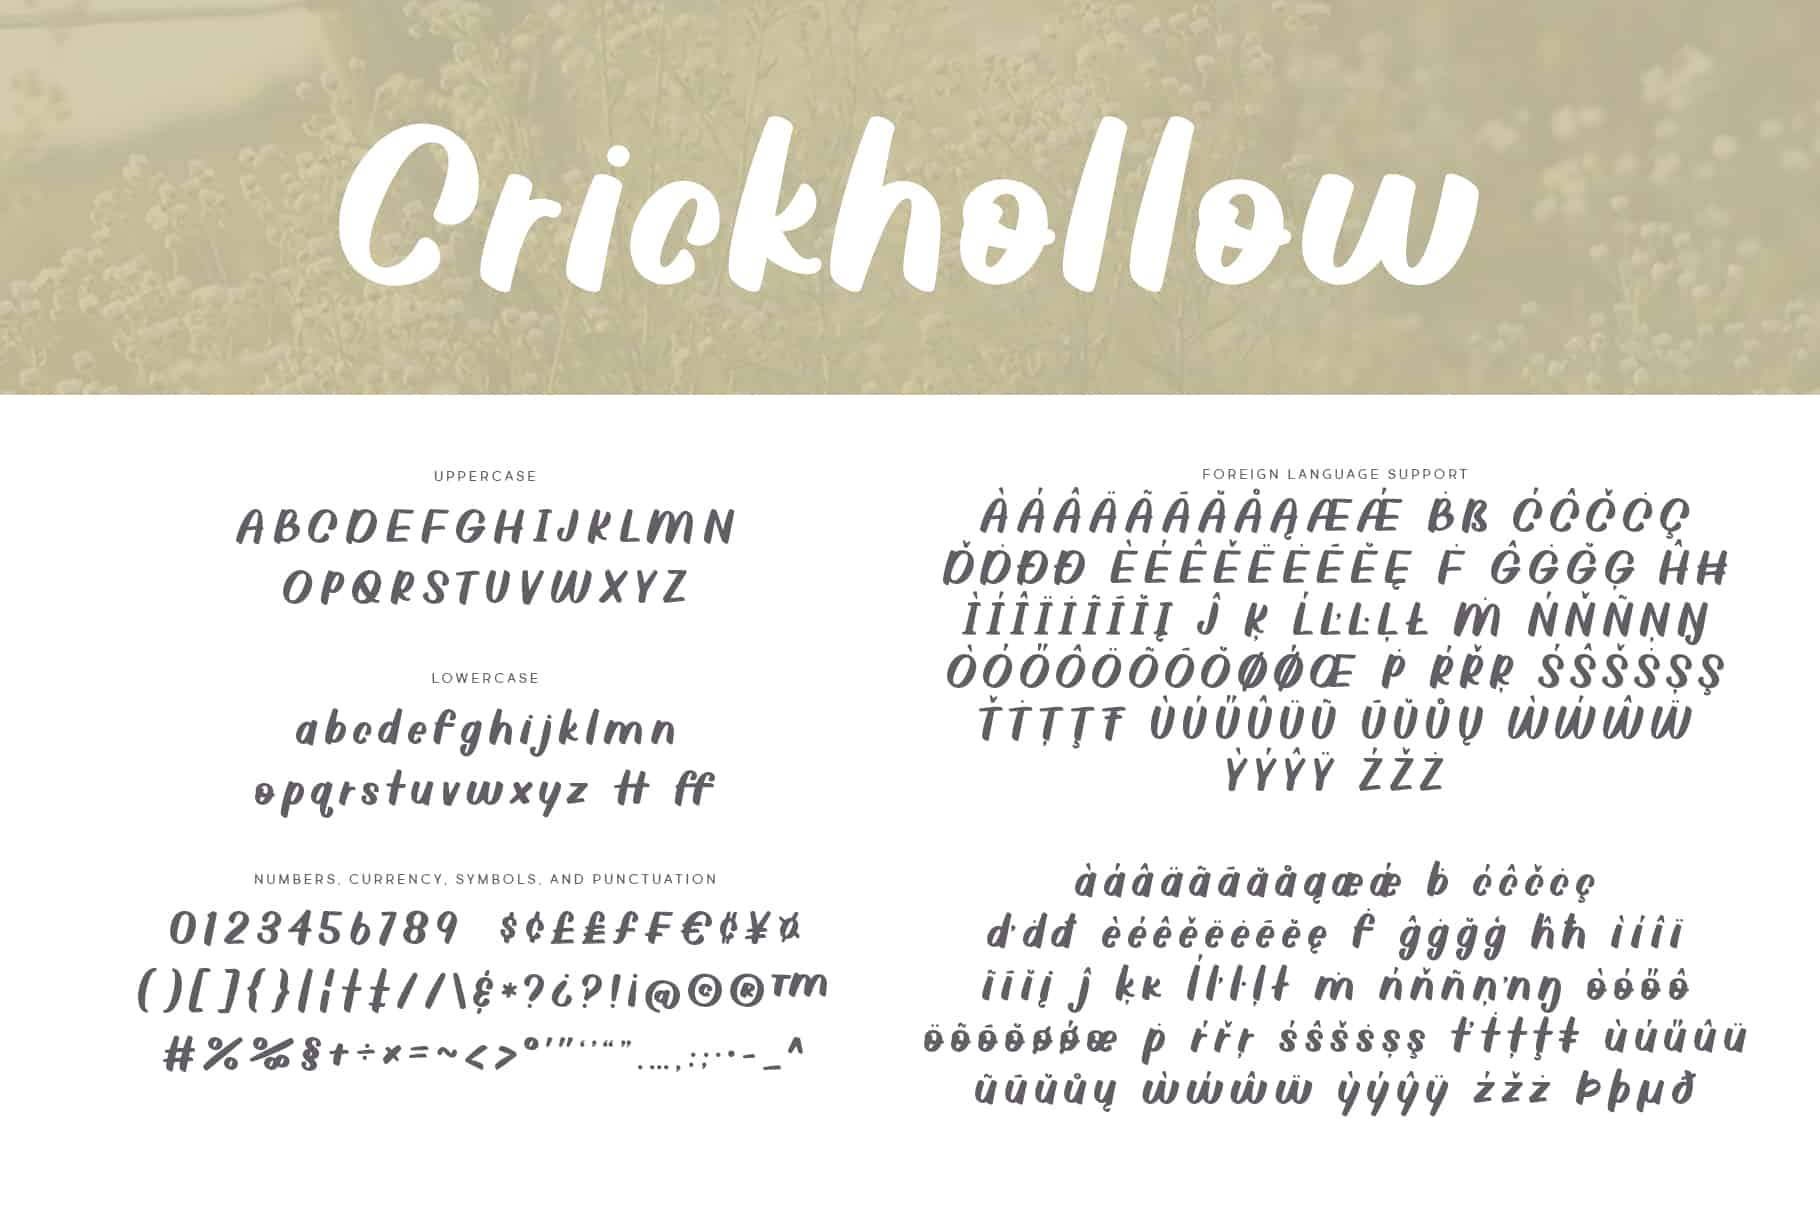 Crickhollow Font Handwritten Brittney Murphy Design